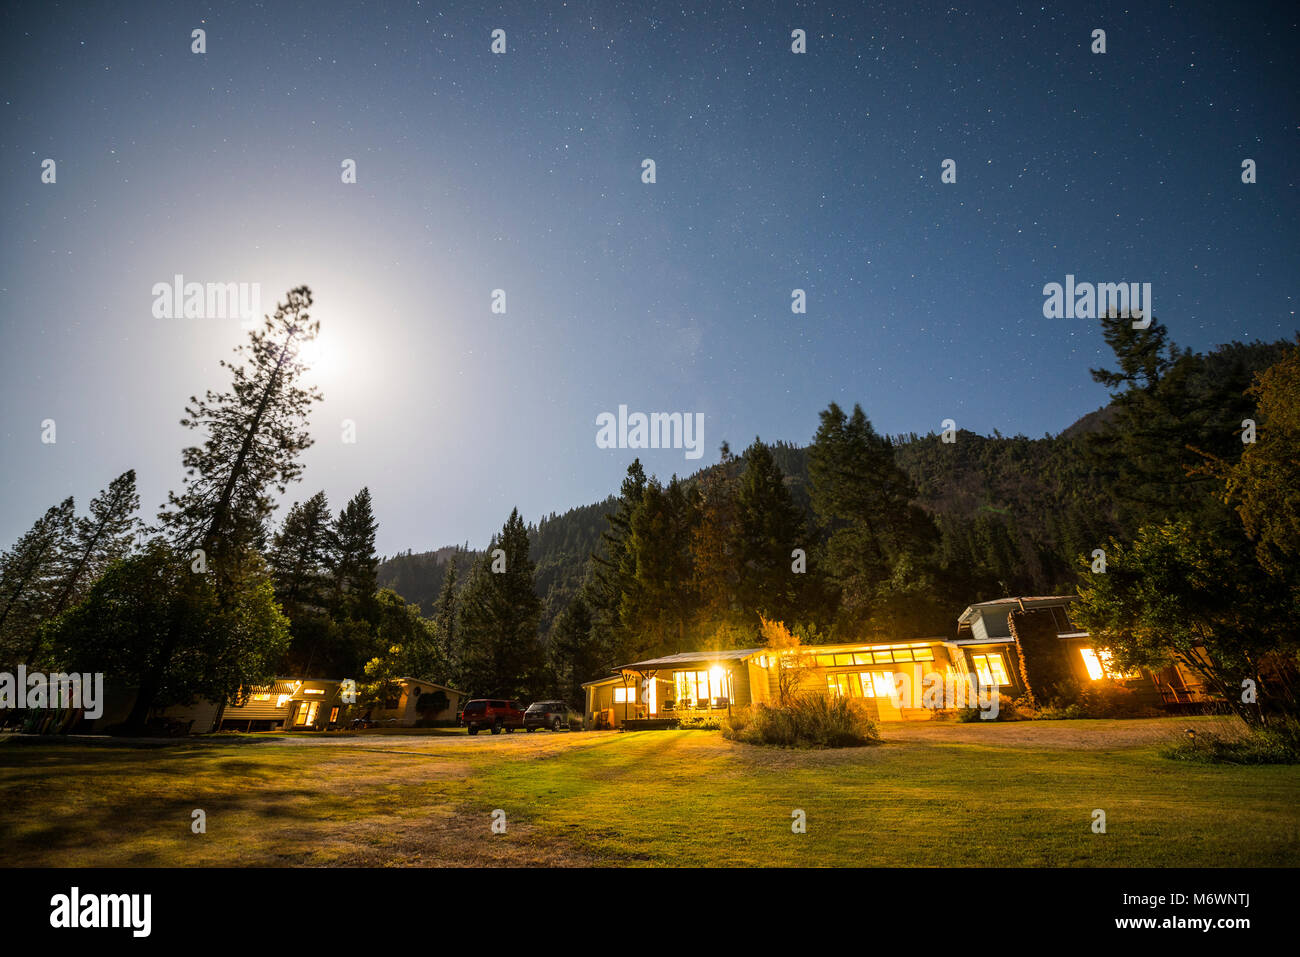 La lontra Bar Lodge e kayak Scuola è illuminata di notte sotto una luna piena con le stelle nel cielo in forcelle di salmone, California. Foto Stock